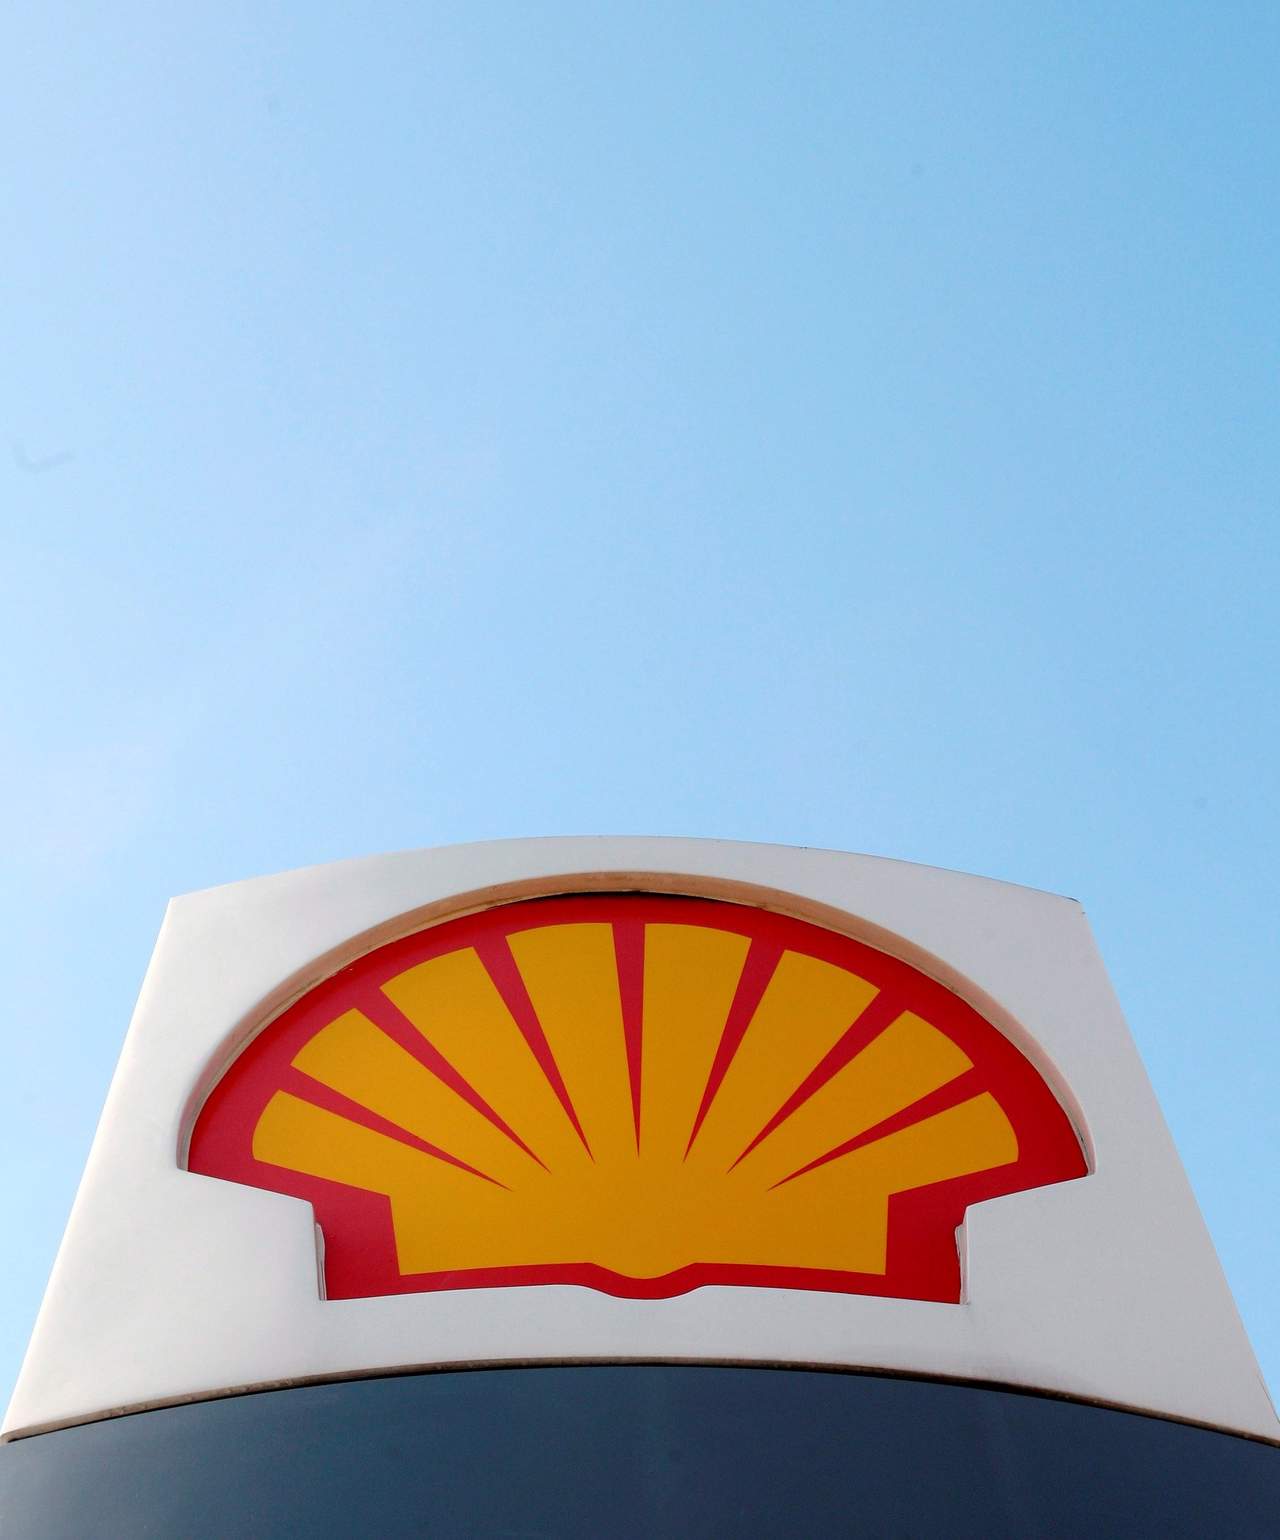  La empresa anglo-holandesa Shell fue la principal ganadora de la primera parte de la subasta de contratos petroleros mexicanos en aguas profundas del Golfo de México, la última gran licitación de este tipo antes del cambio de gobierno a fin de este año. (ARCHIVO)